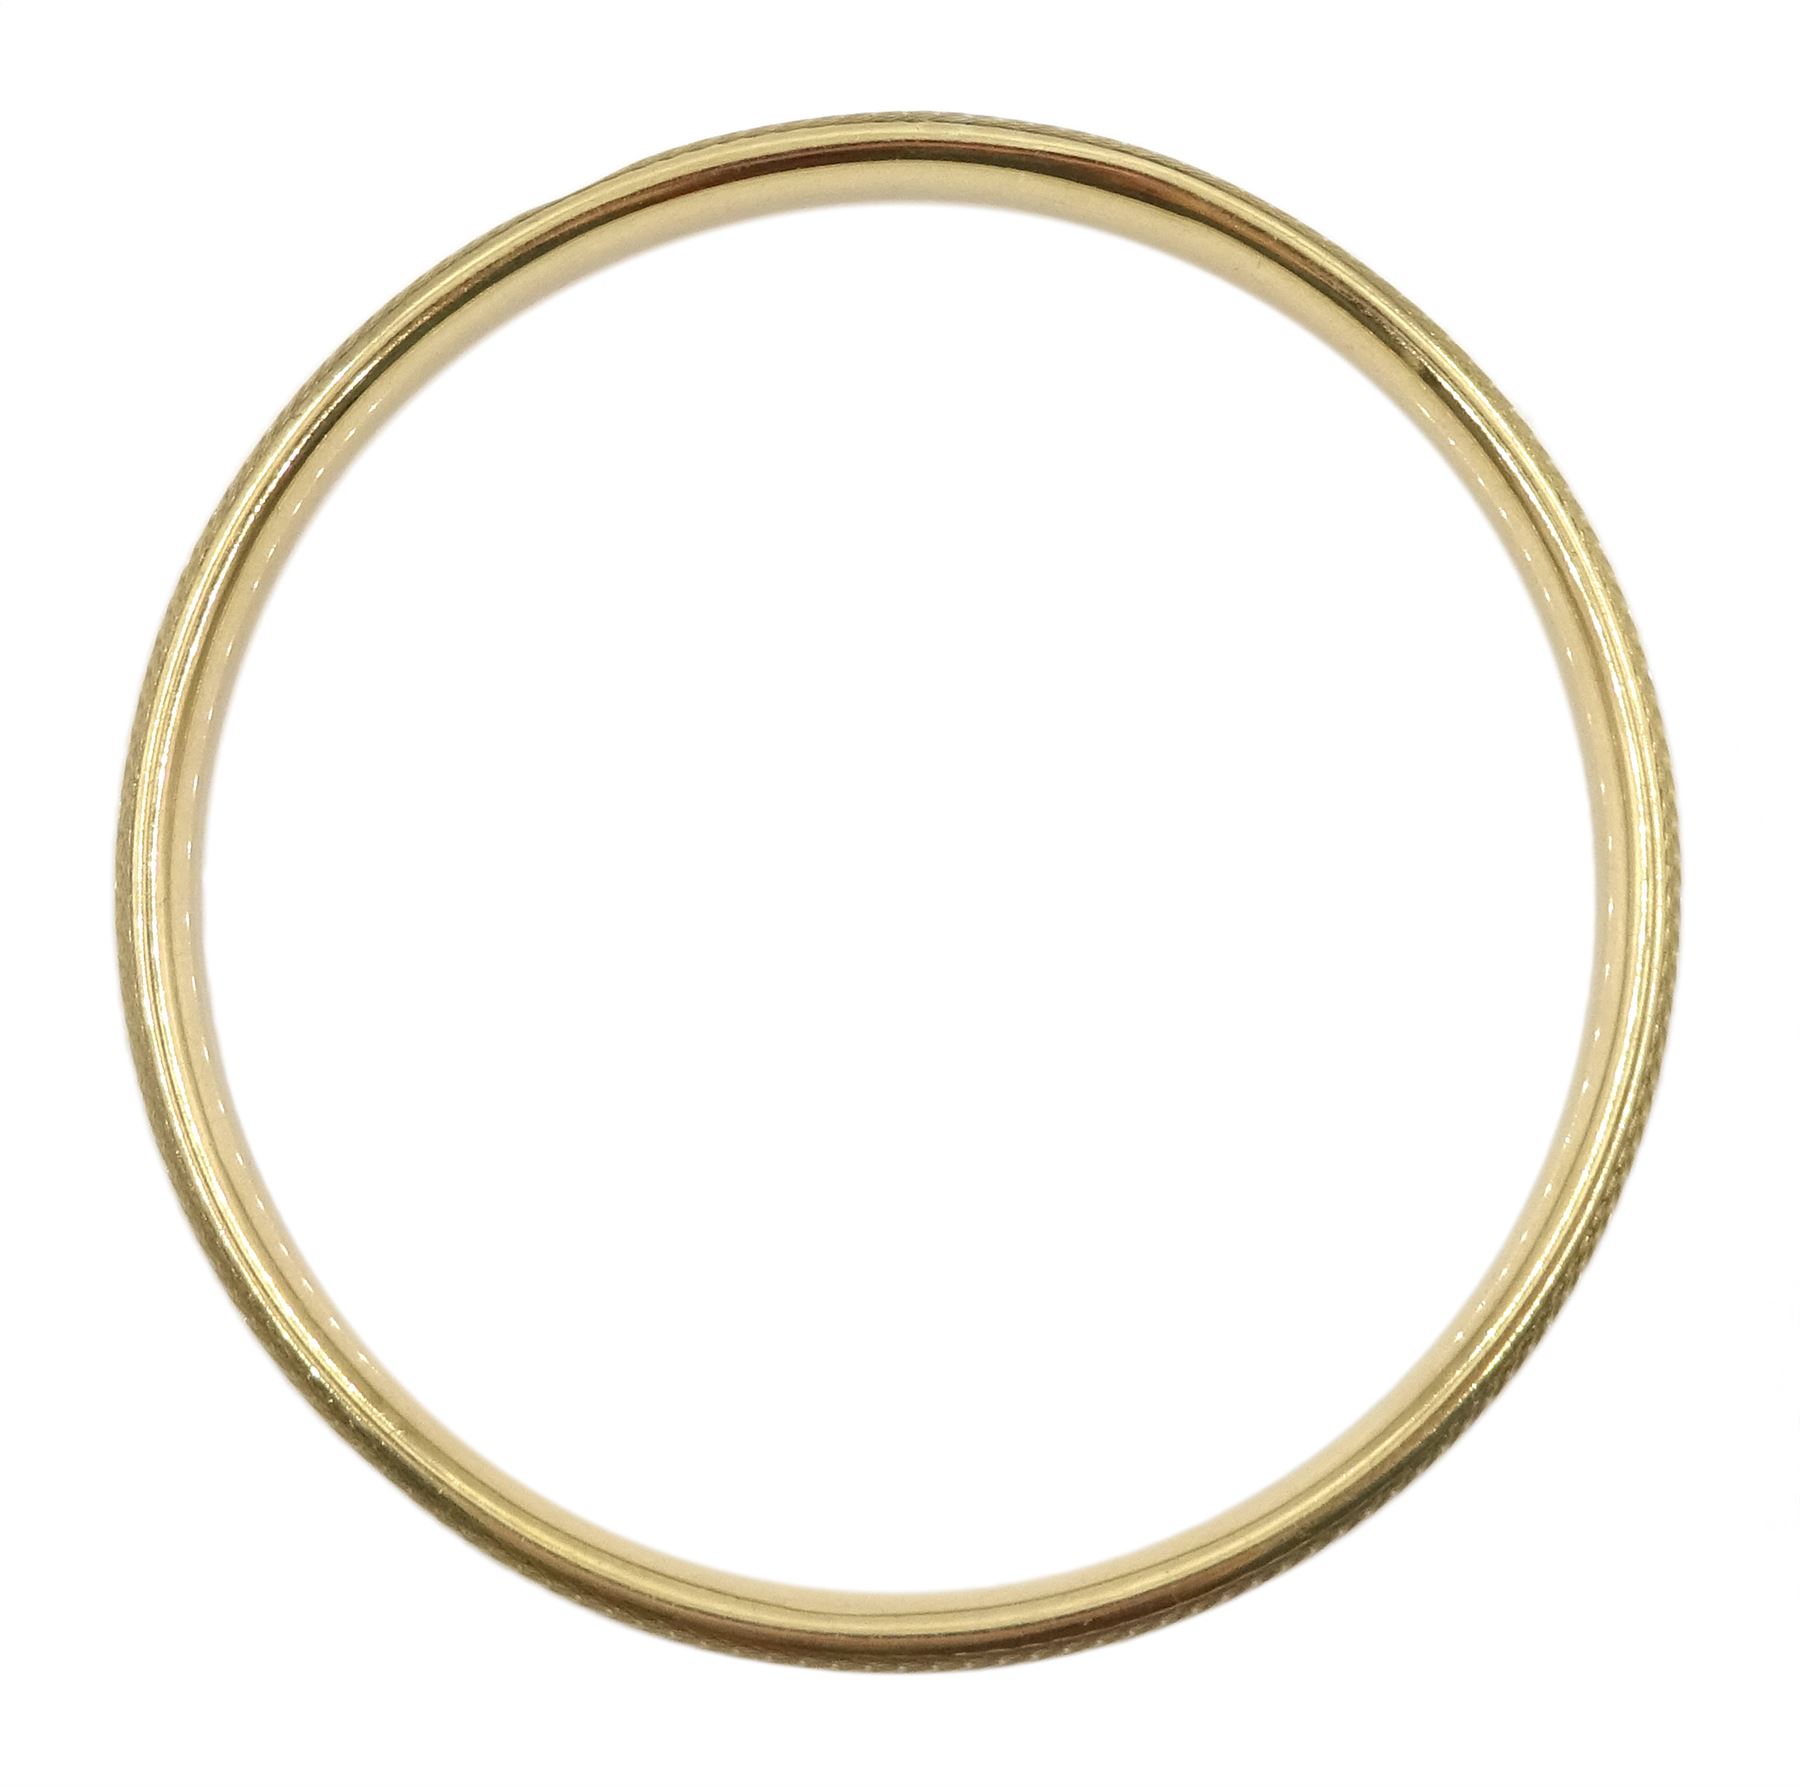 Gold bangle - Image 2 of 2